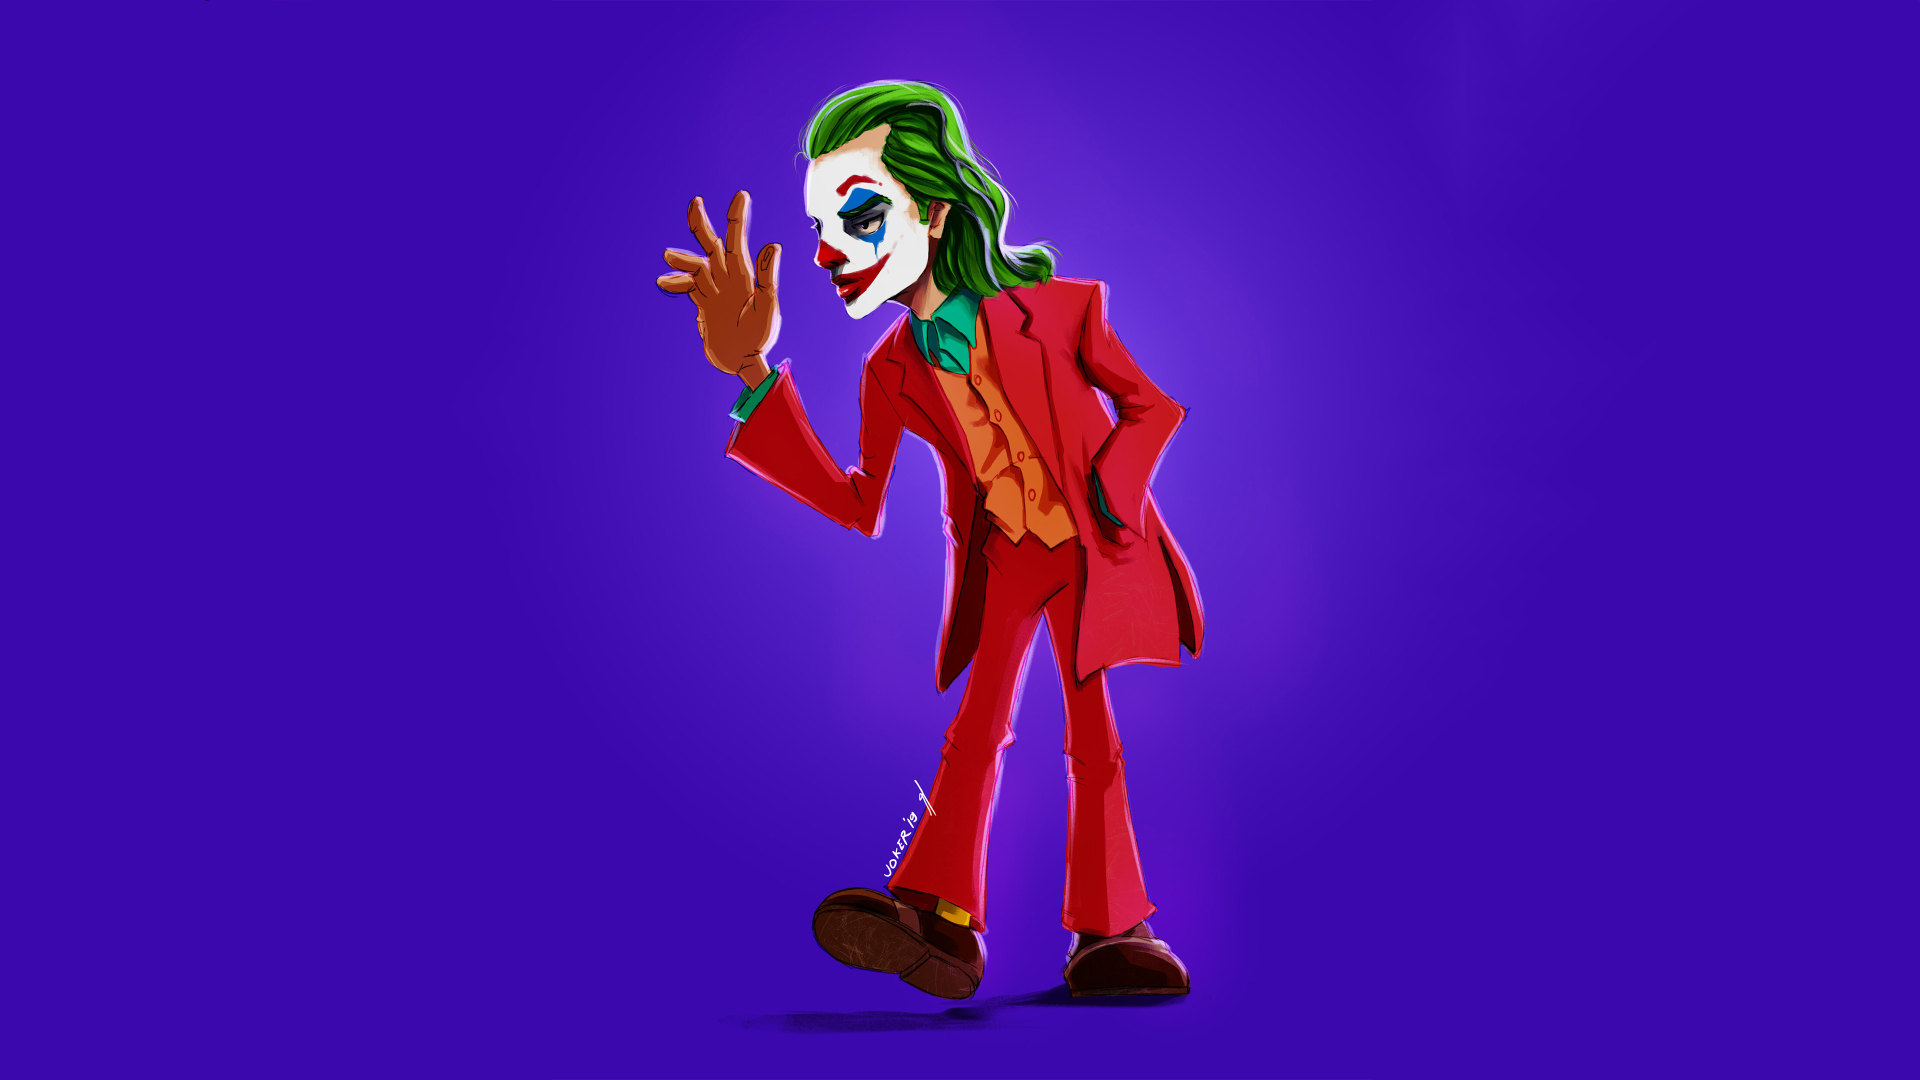 4K Ultra HD Joker Wallpapers HD Desktop Backgrounds 3840x2160  Joker hd  wallpaper Joker wallpapers Hd wallpapers for laptop